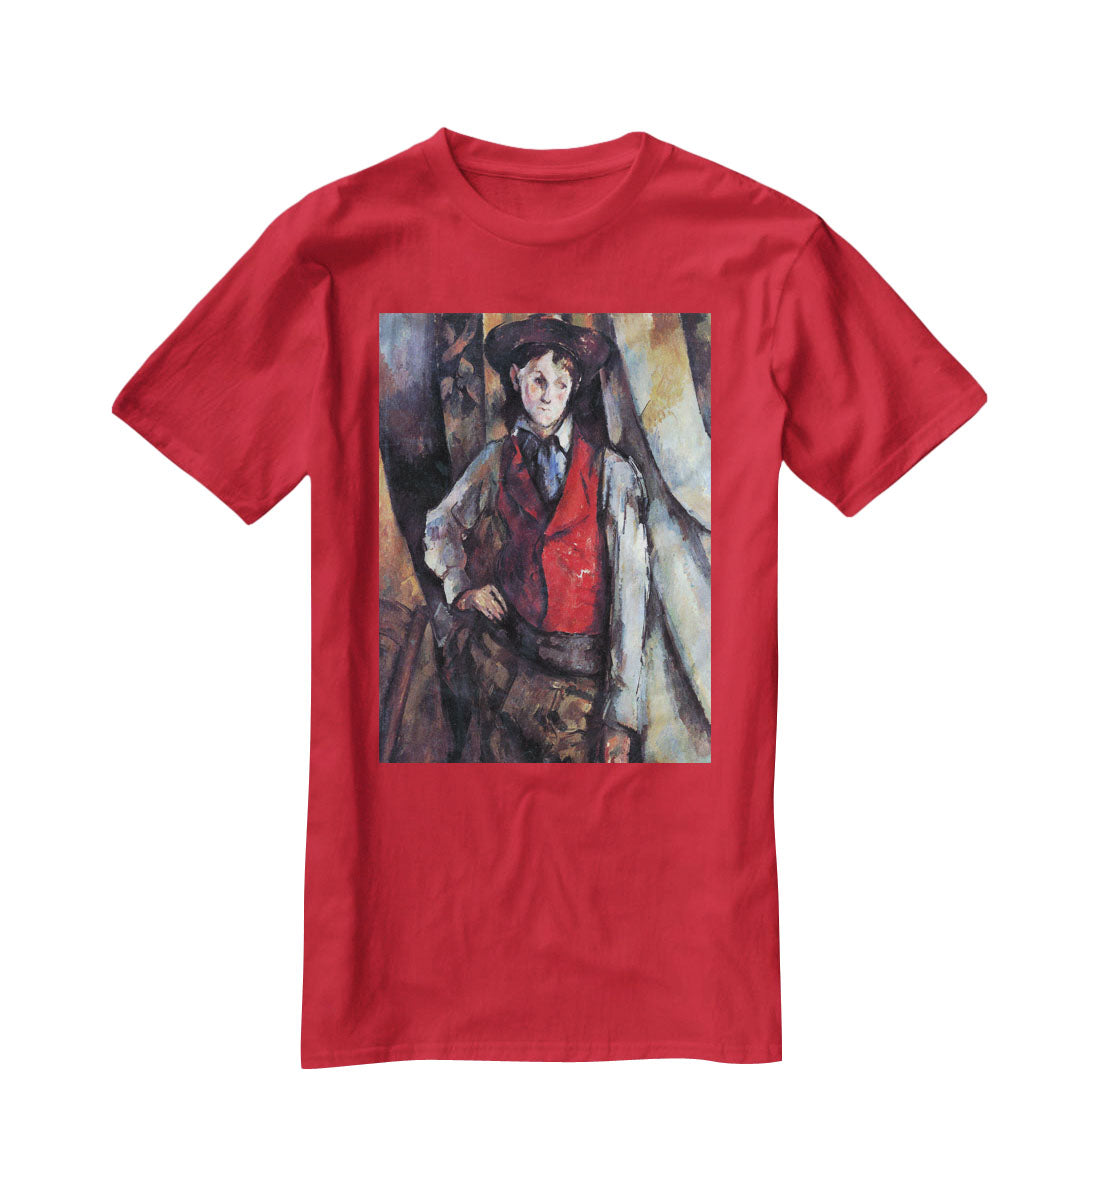 Boy in Red Waistcoat by Cezanne T-Shirt - Canvas Art Rocks - 4